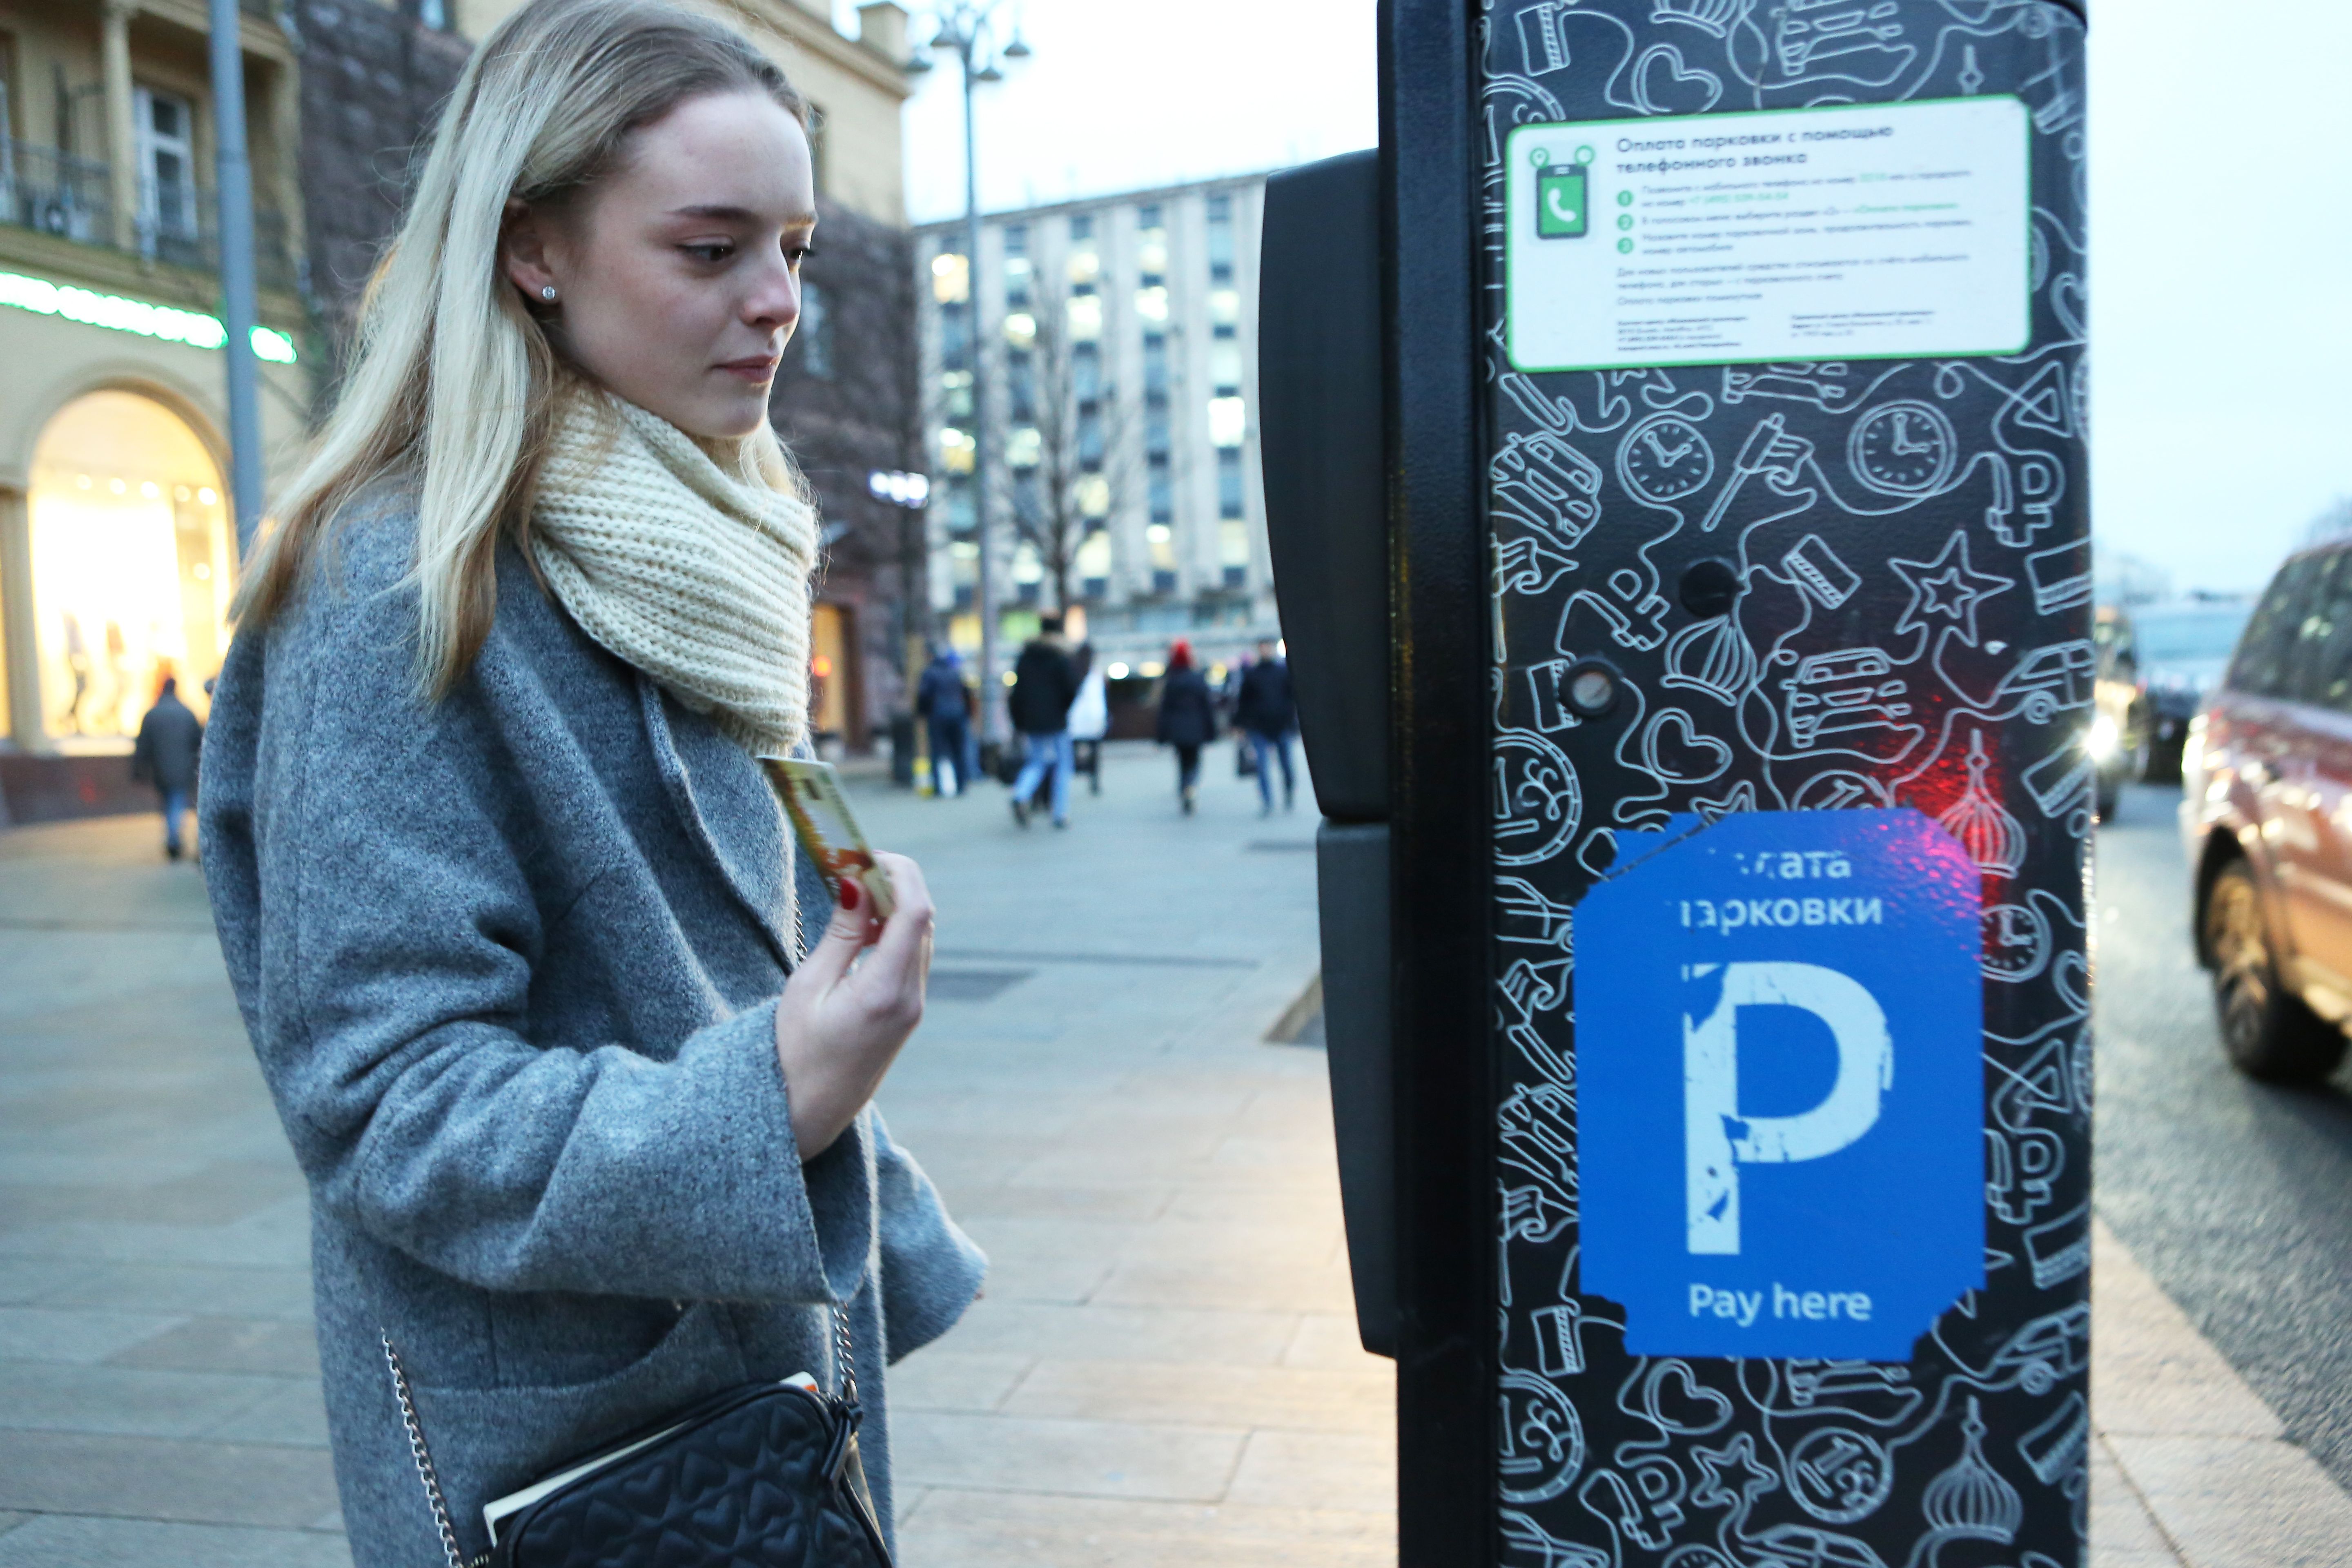 Платить придется лишь за плоскостную парковку со шлагбаумом. Фото: Алексей Орлов